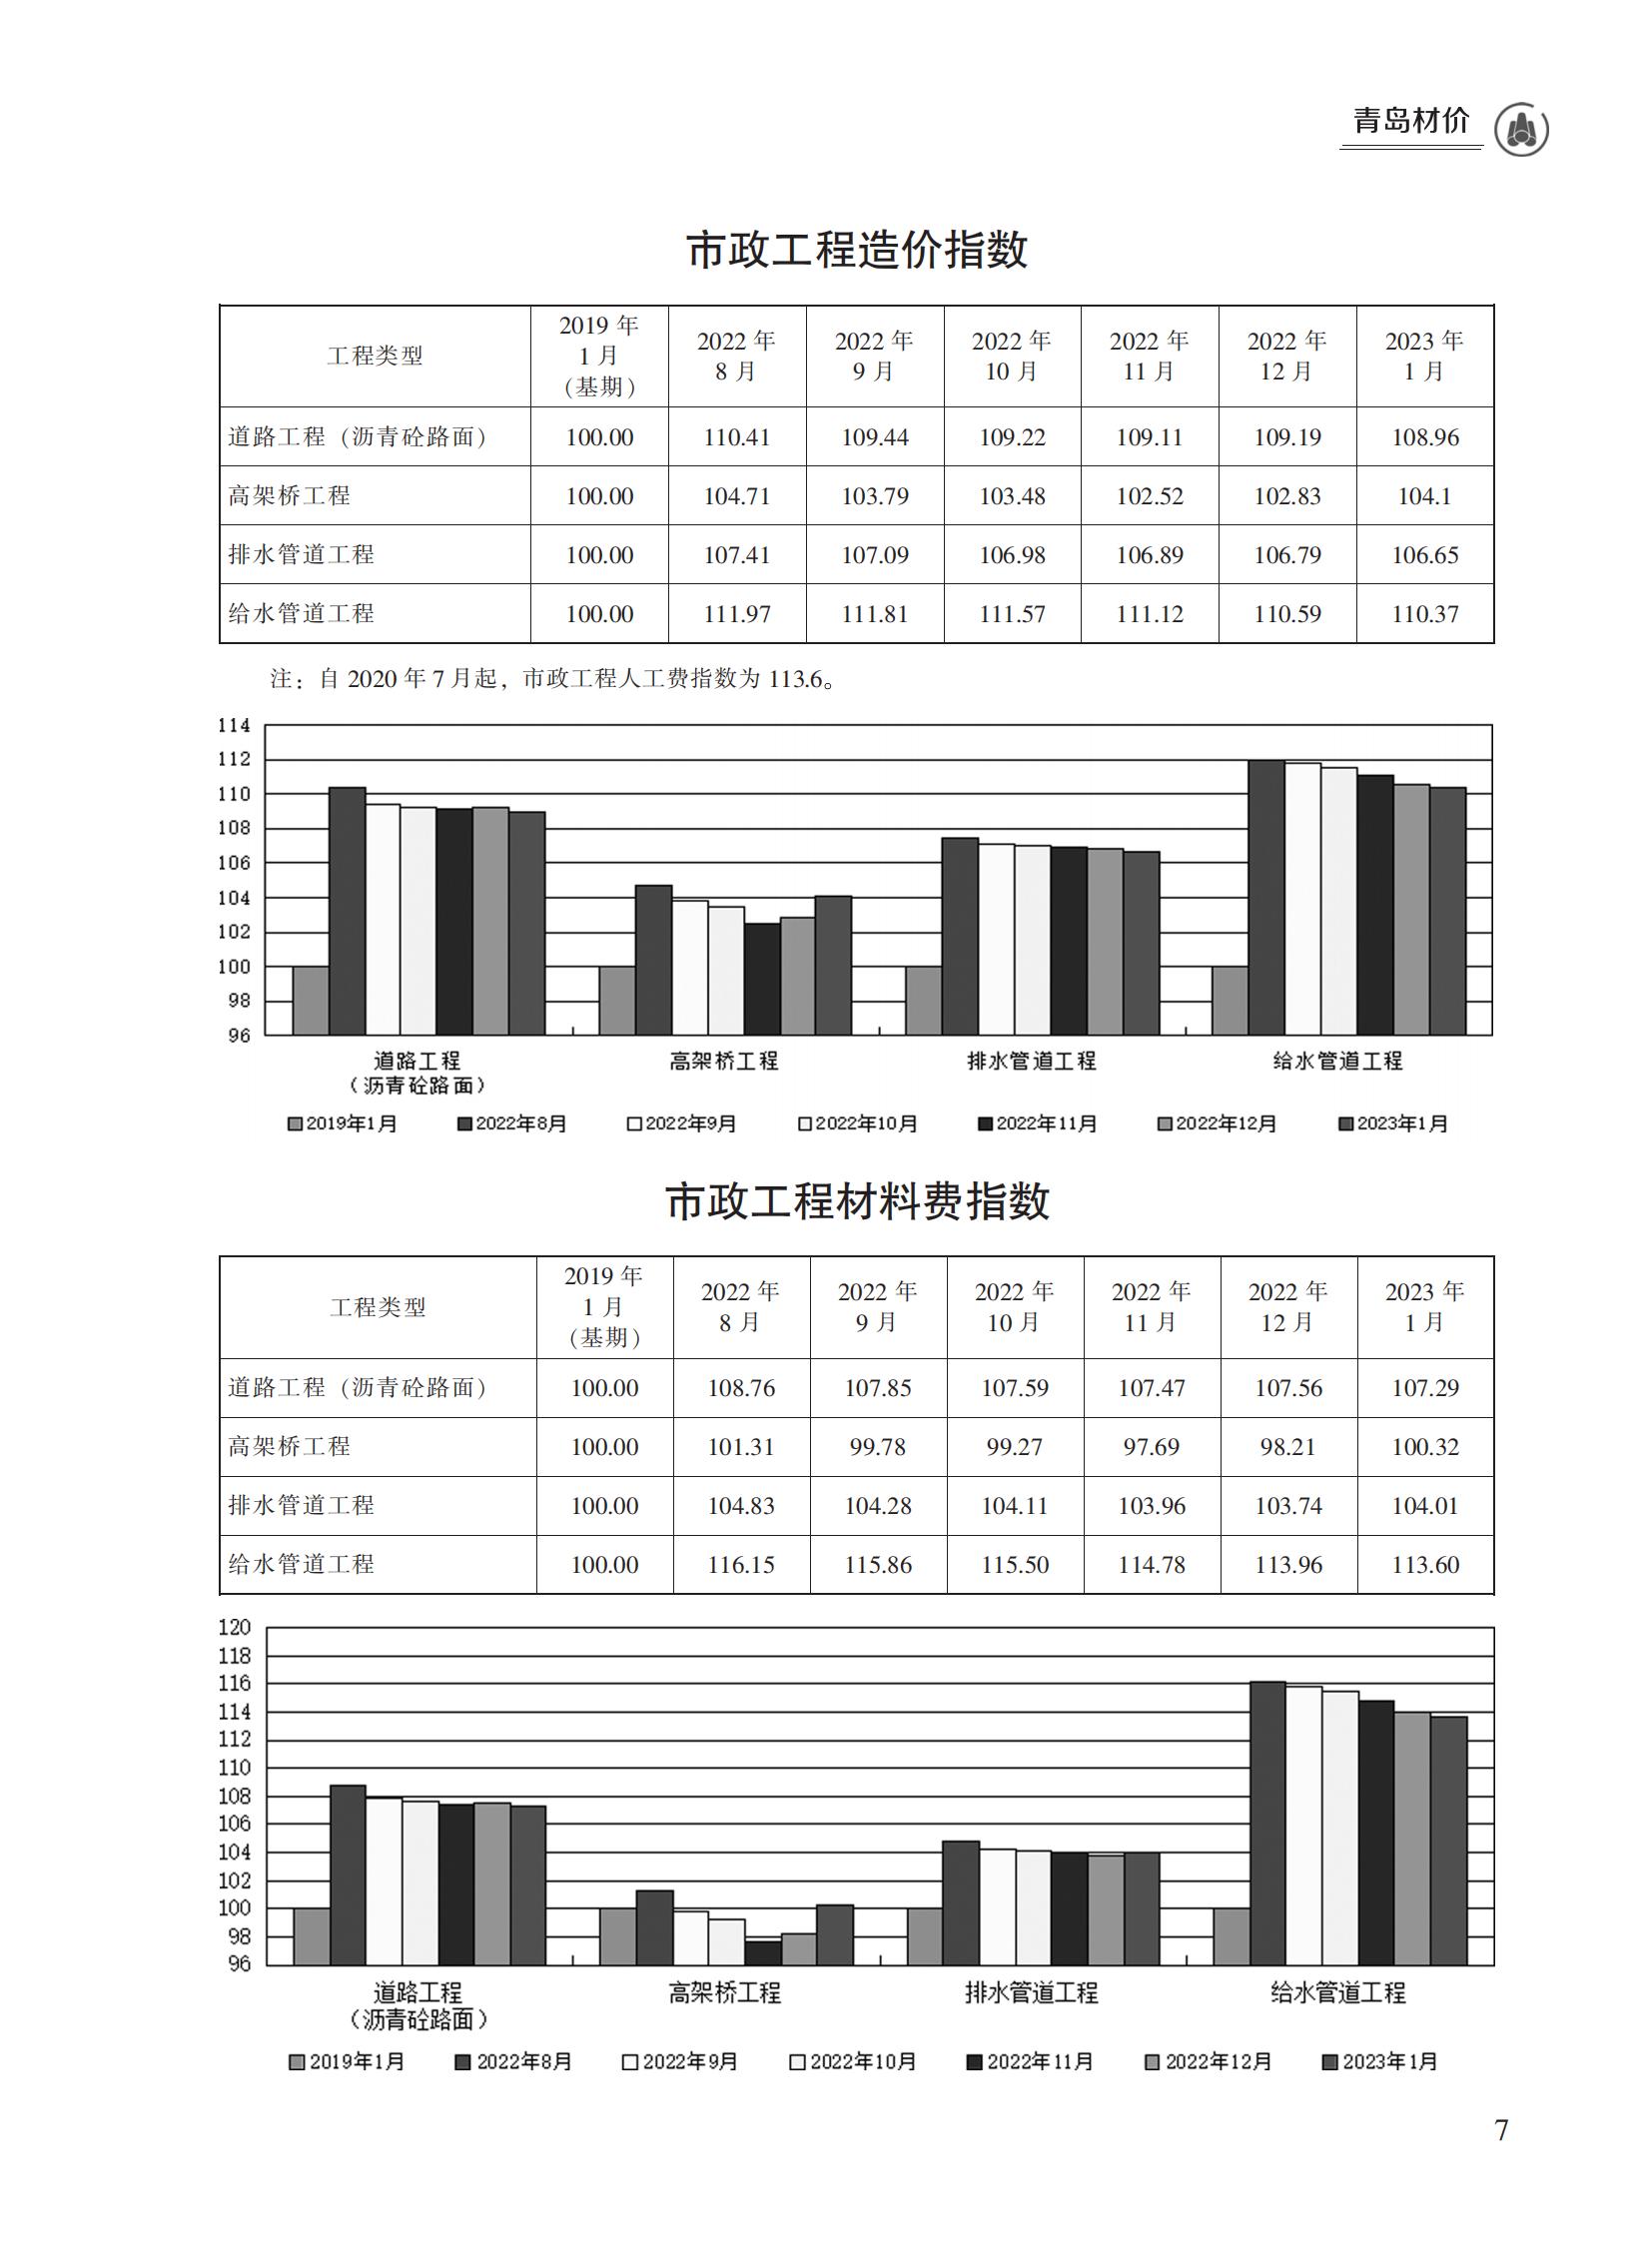 2023年1月青岛市建设工程材料价格及造价指数_06.jpg